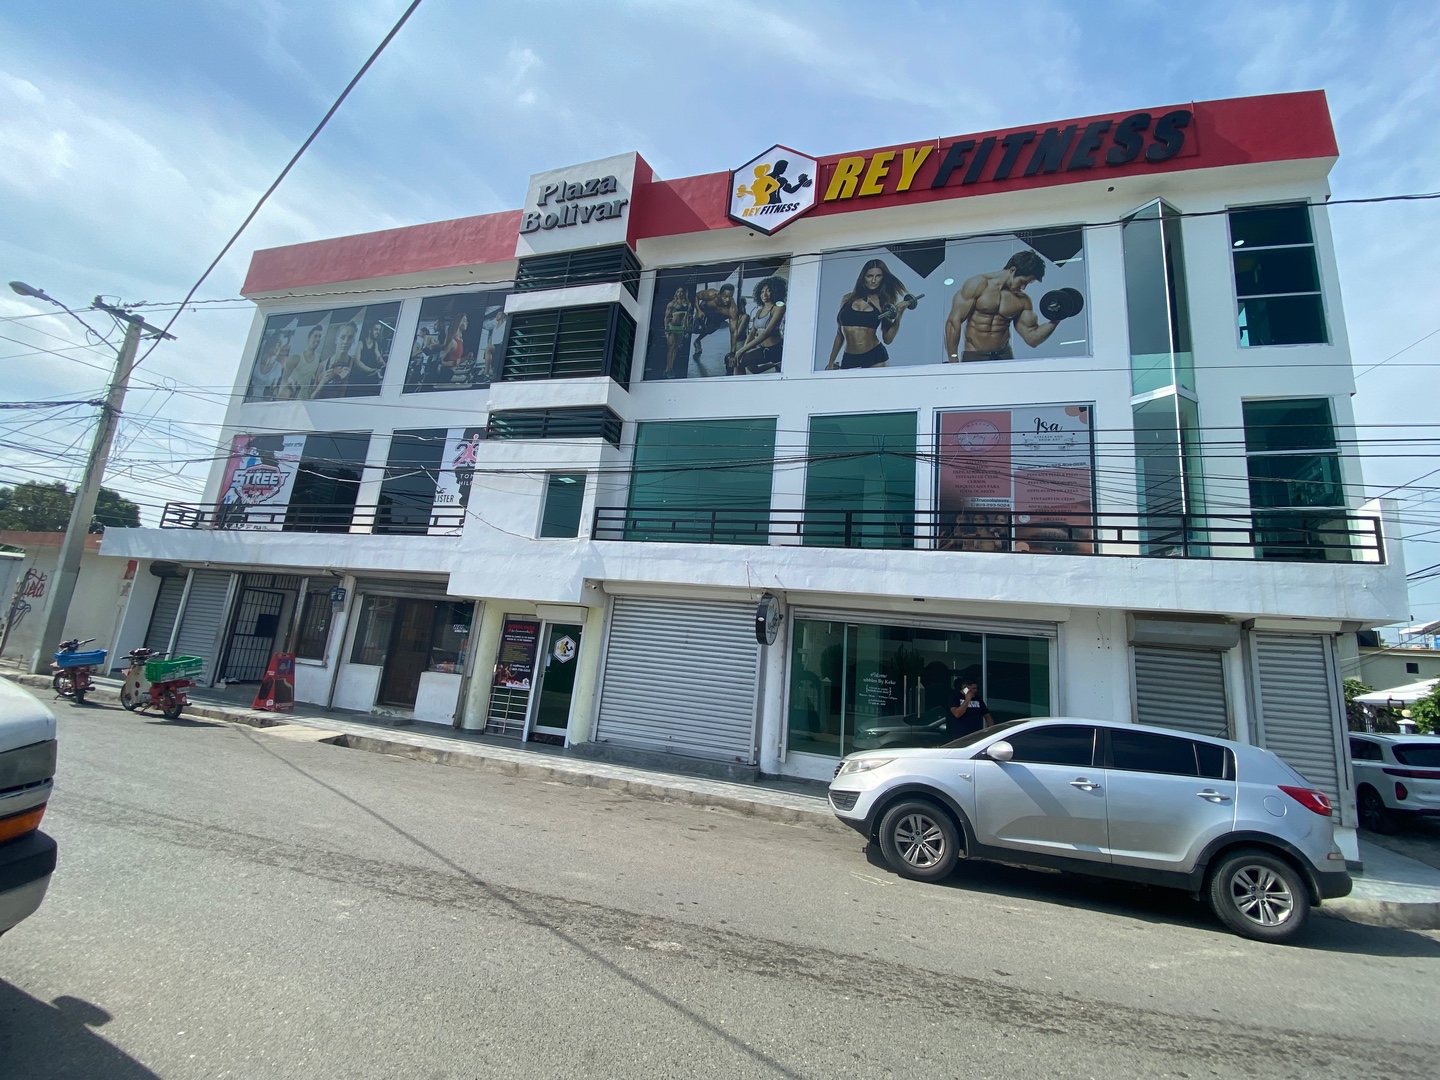 oficinas y locales comerciales - LOCAL COMERCIAL EN RENTA SEGUNDO NIVEL PLAZA BOLÍVAR 